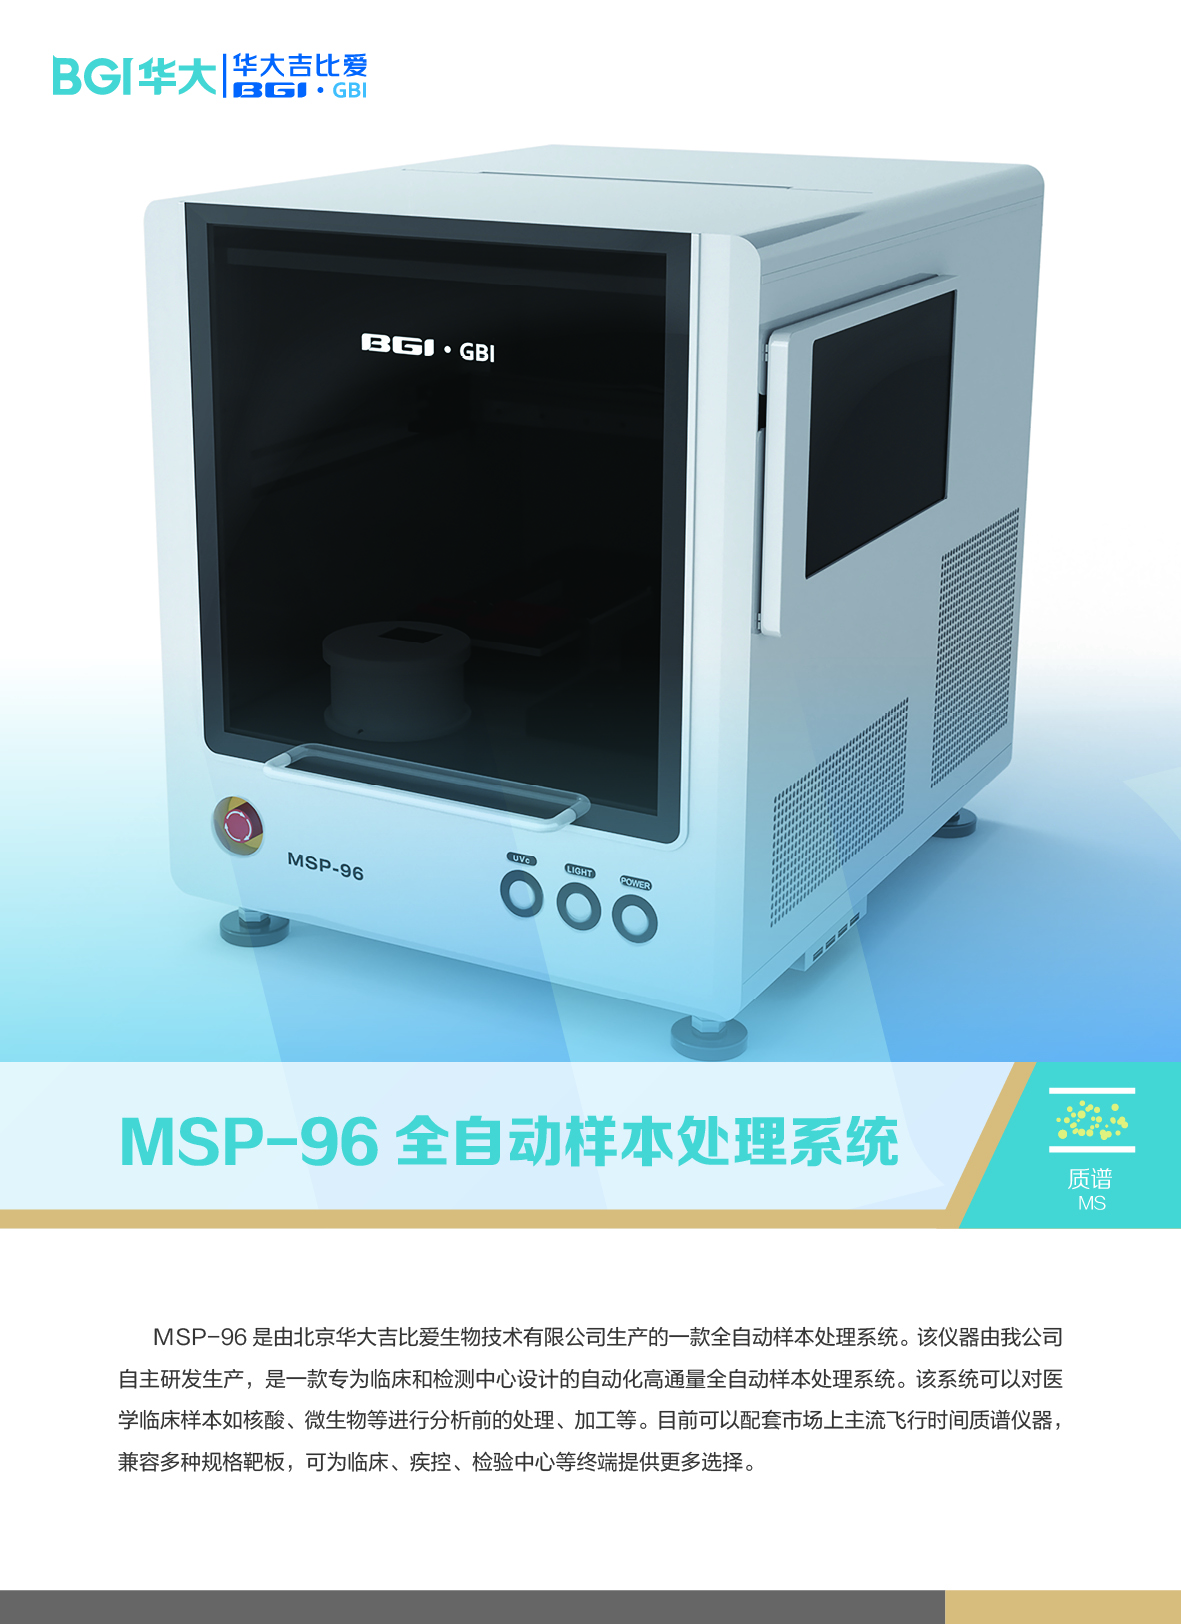 MSP-96全自動質譜點樣儀